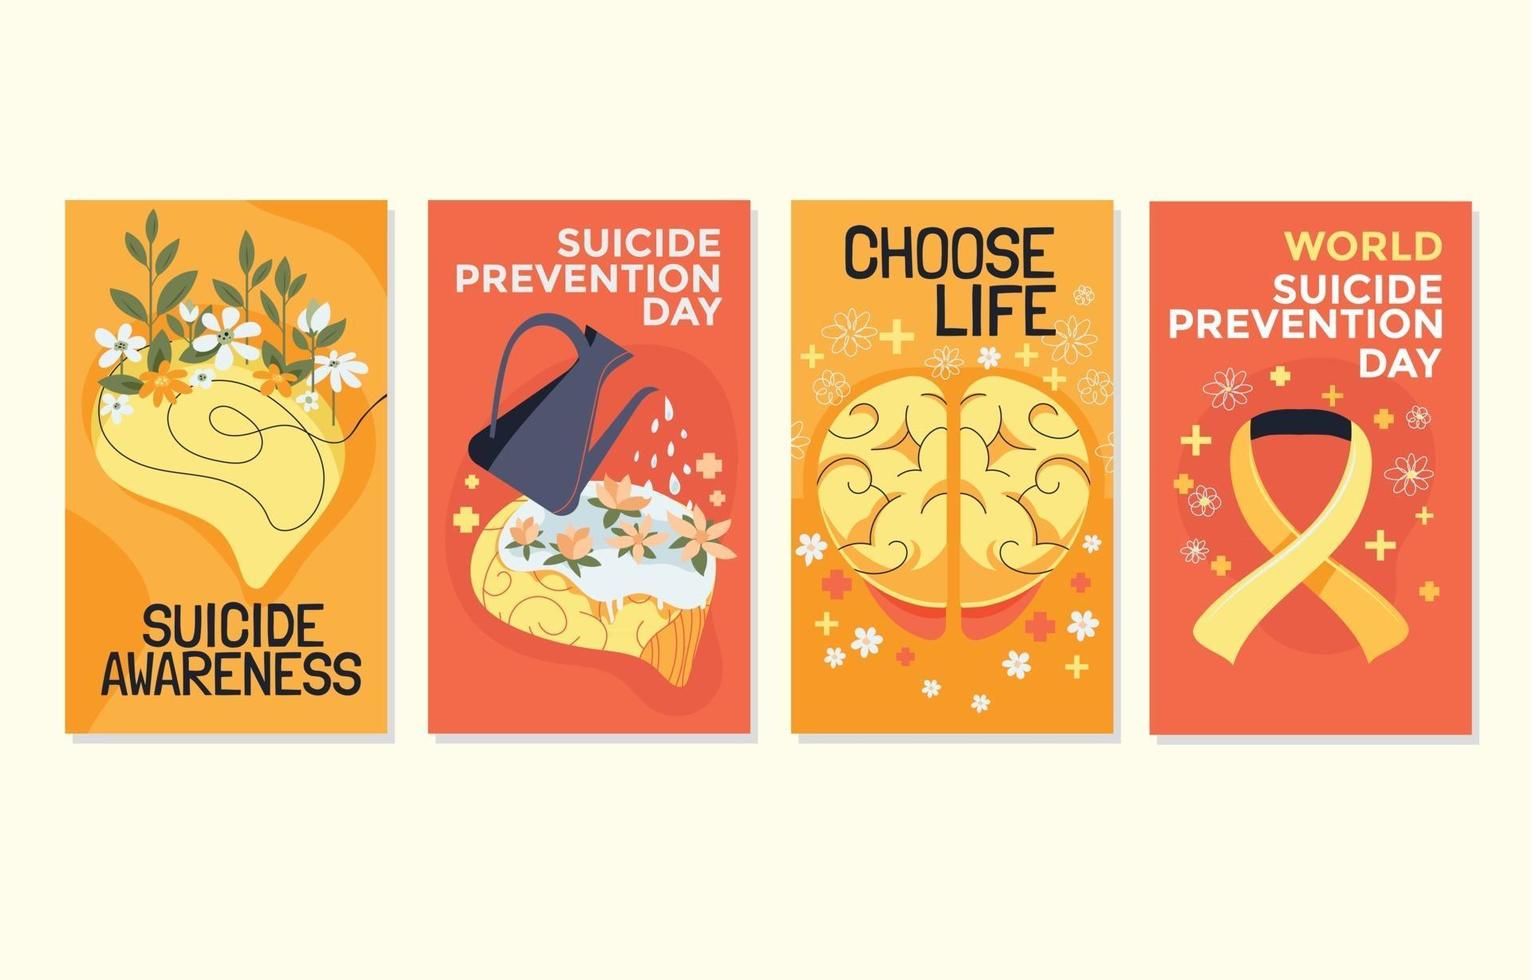 kortsamling på temat världens dag för förebyggande av självmord över hela världen vektor